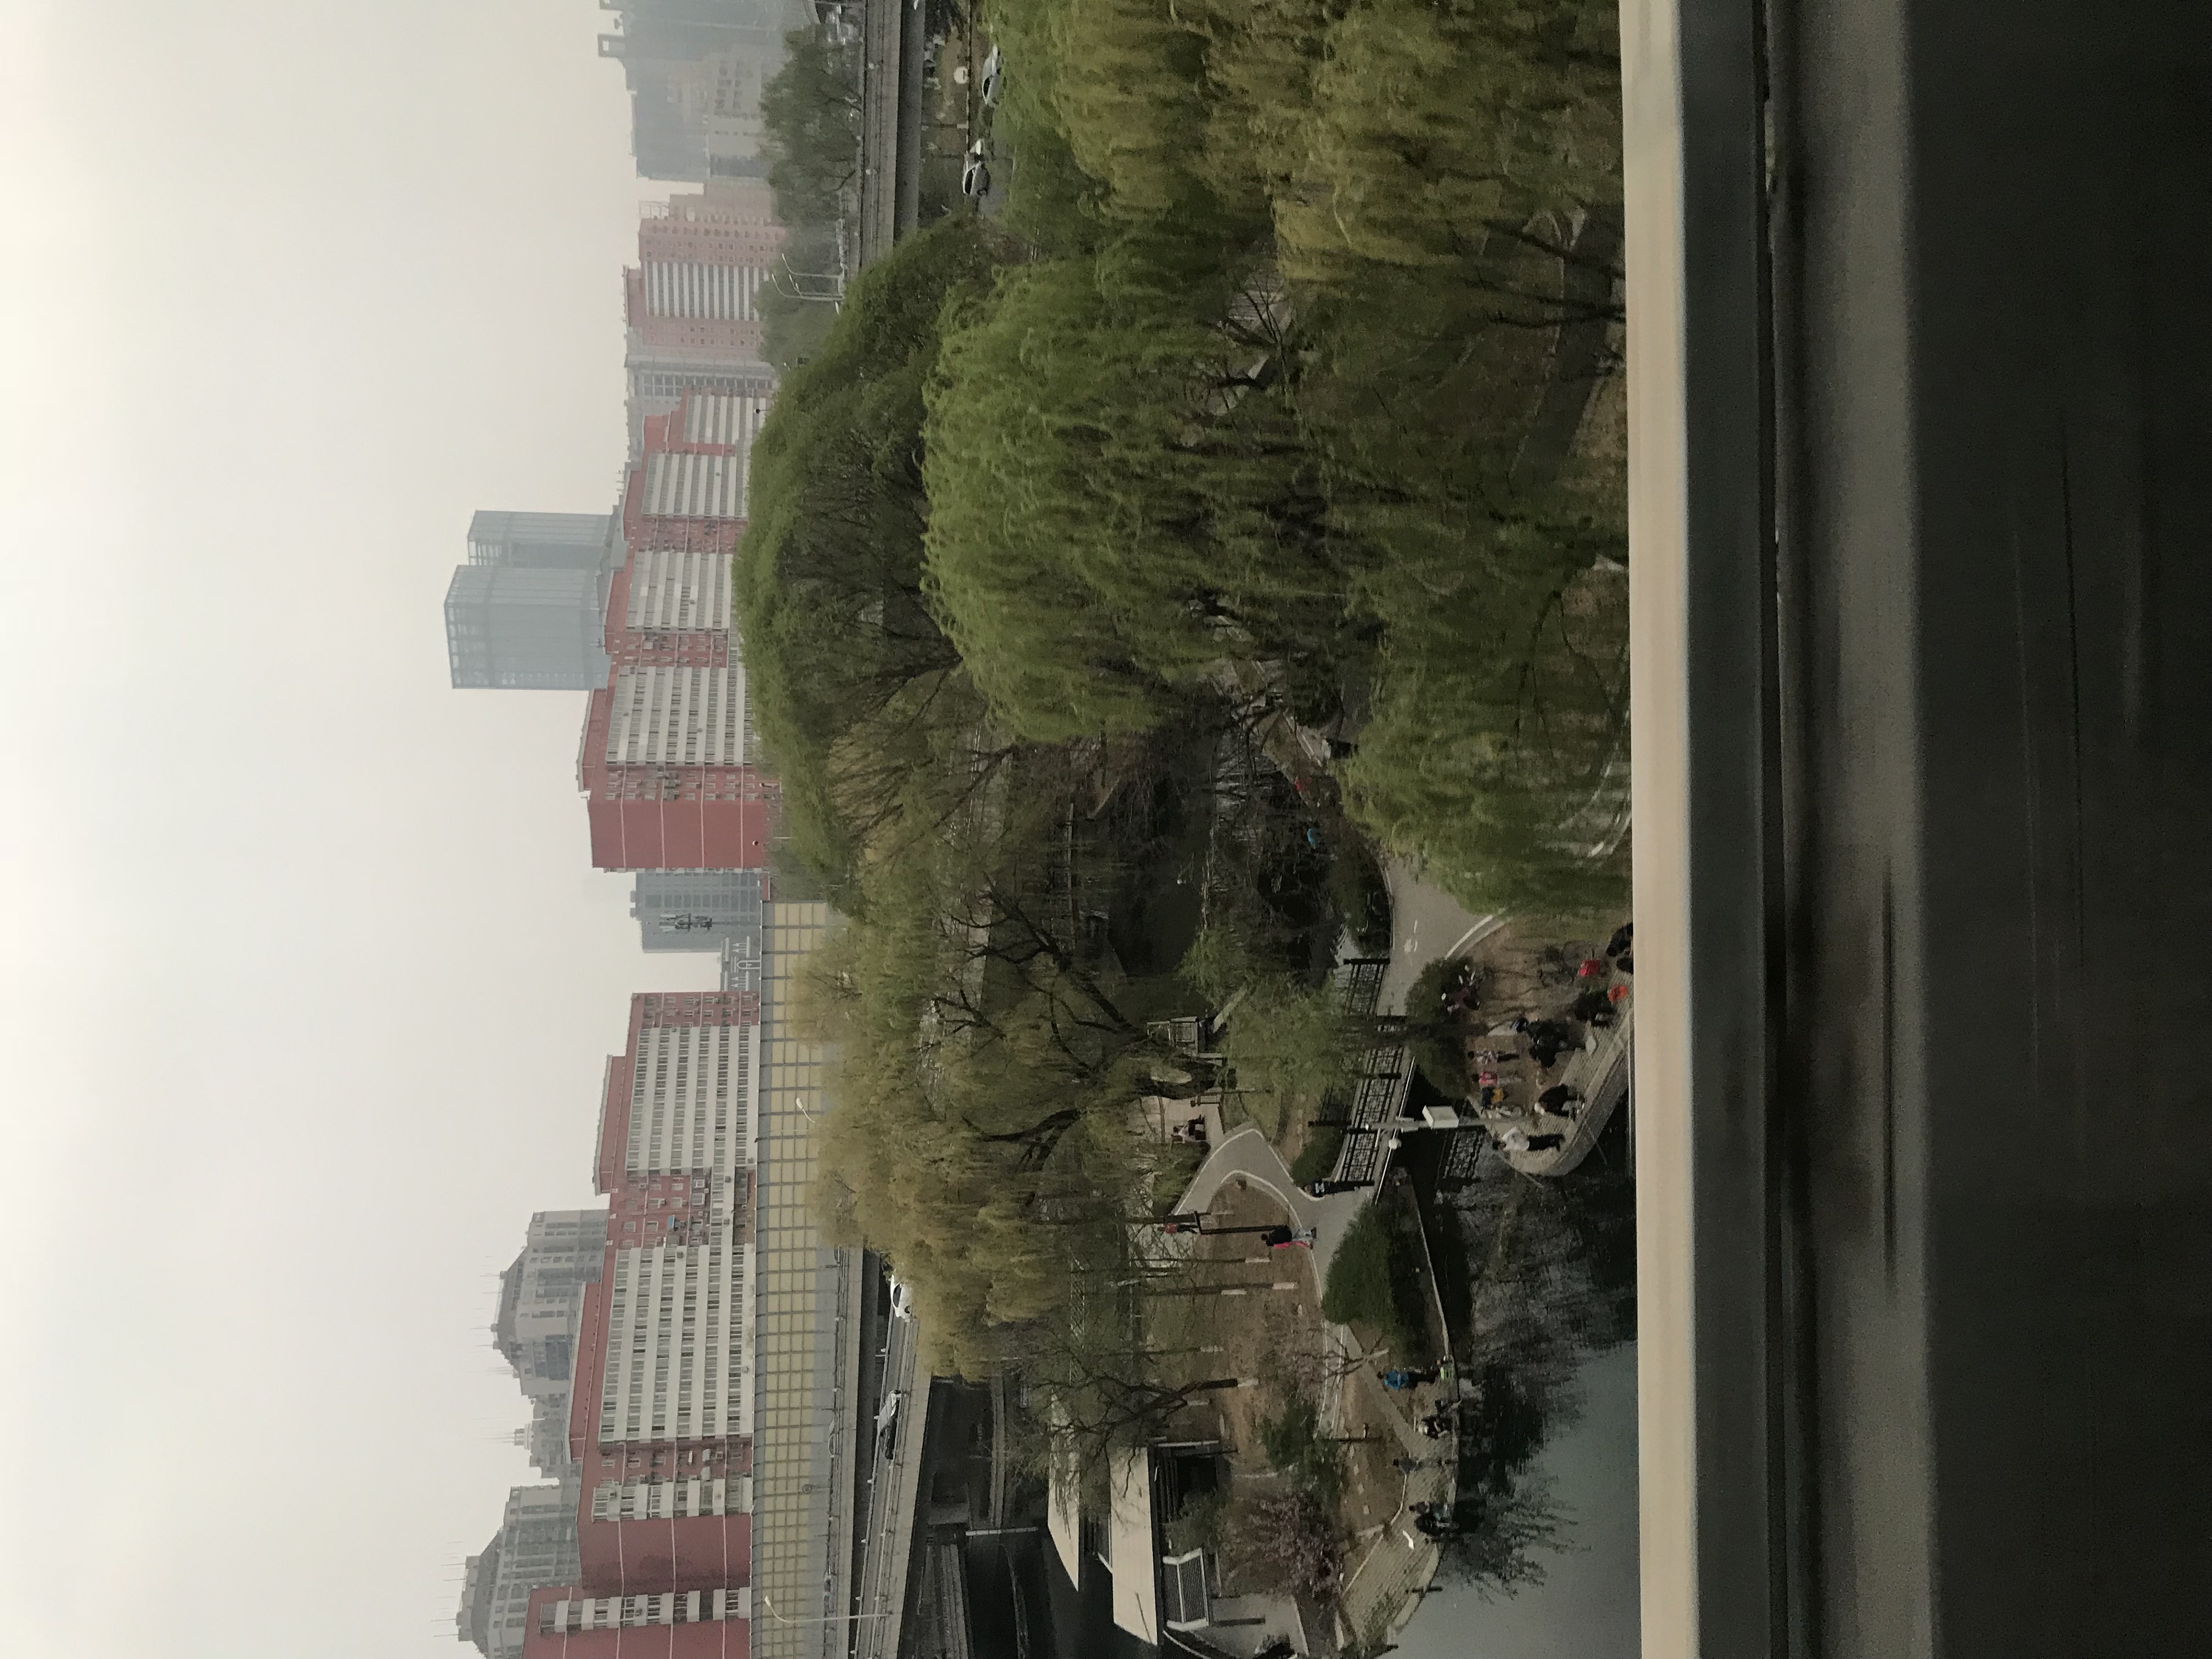 ./2018/03 - Viking China/01 - Beijing Day 1/IMG_4855.JPG